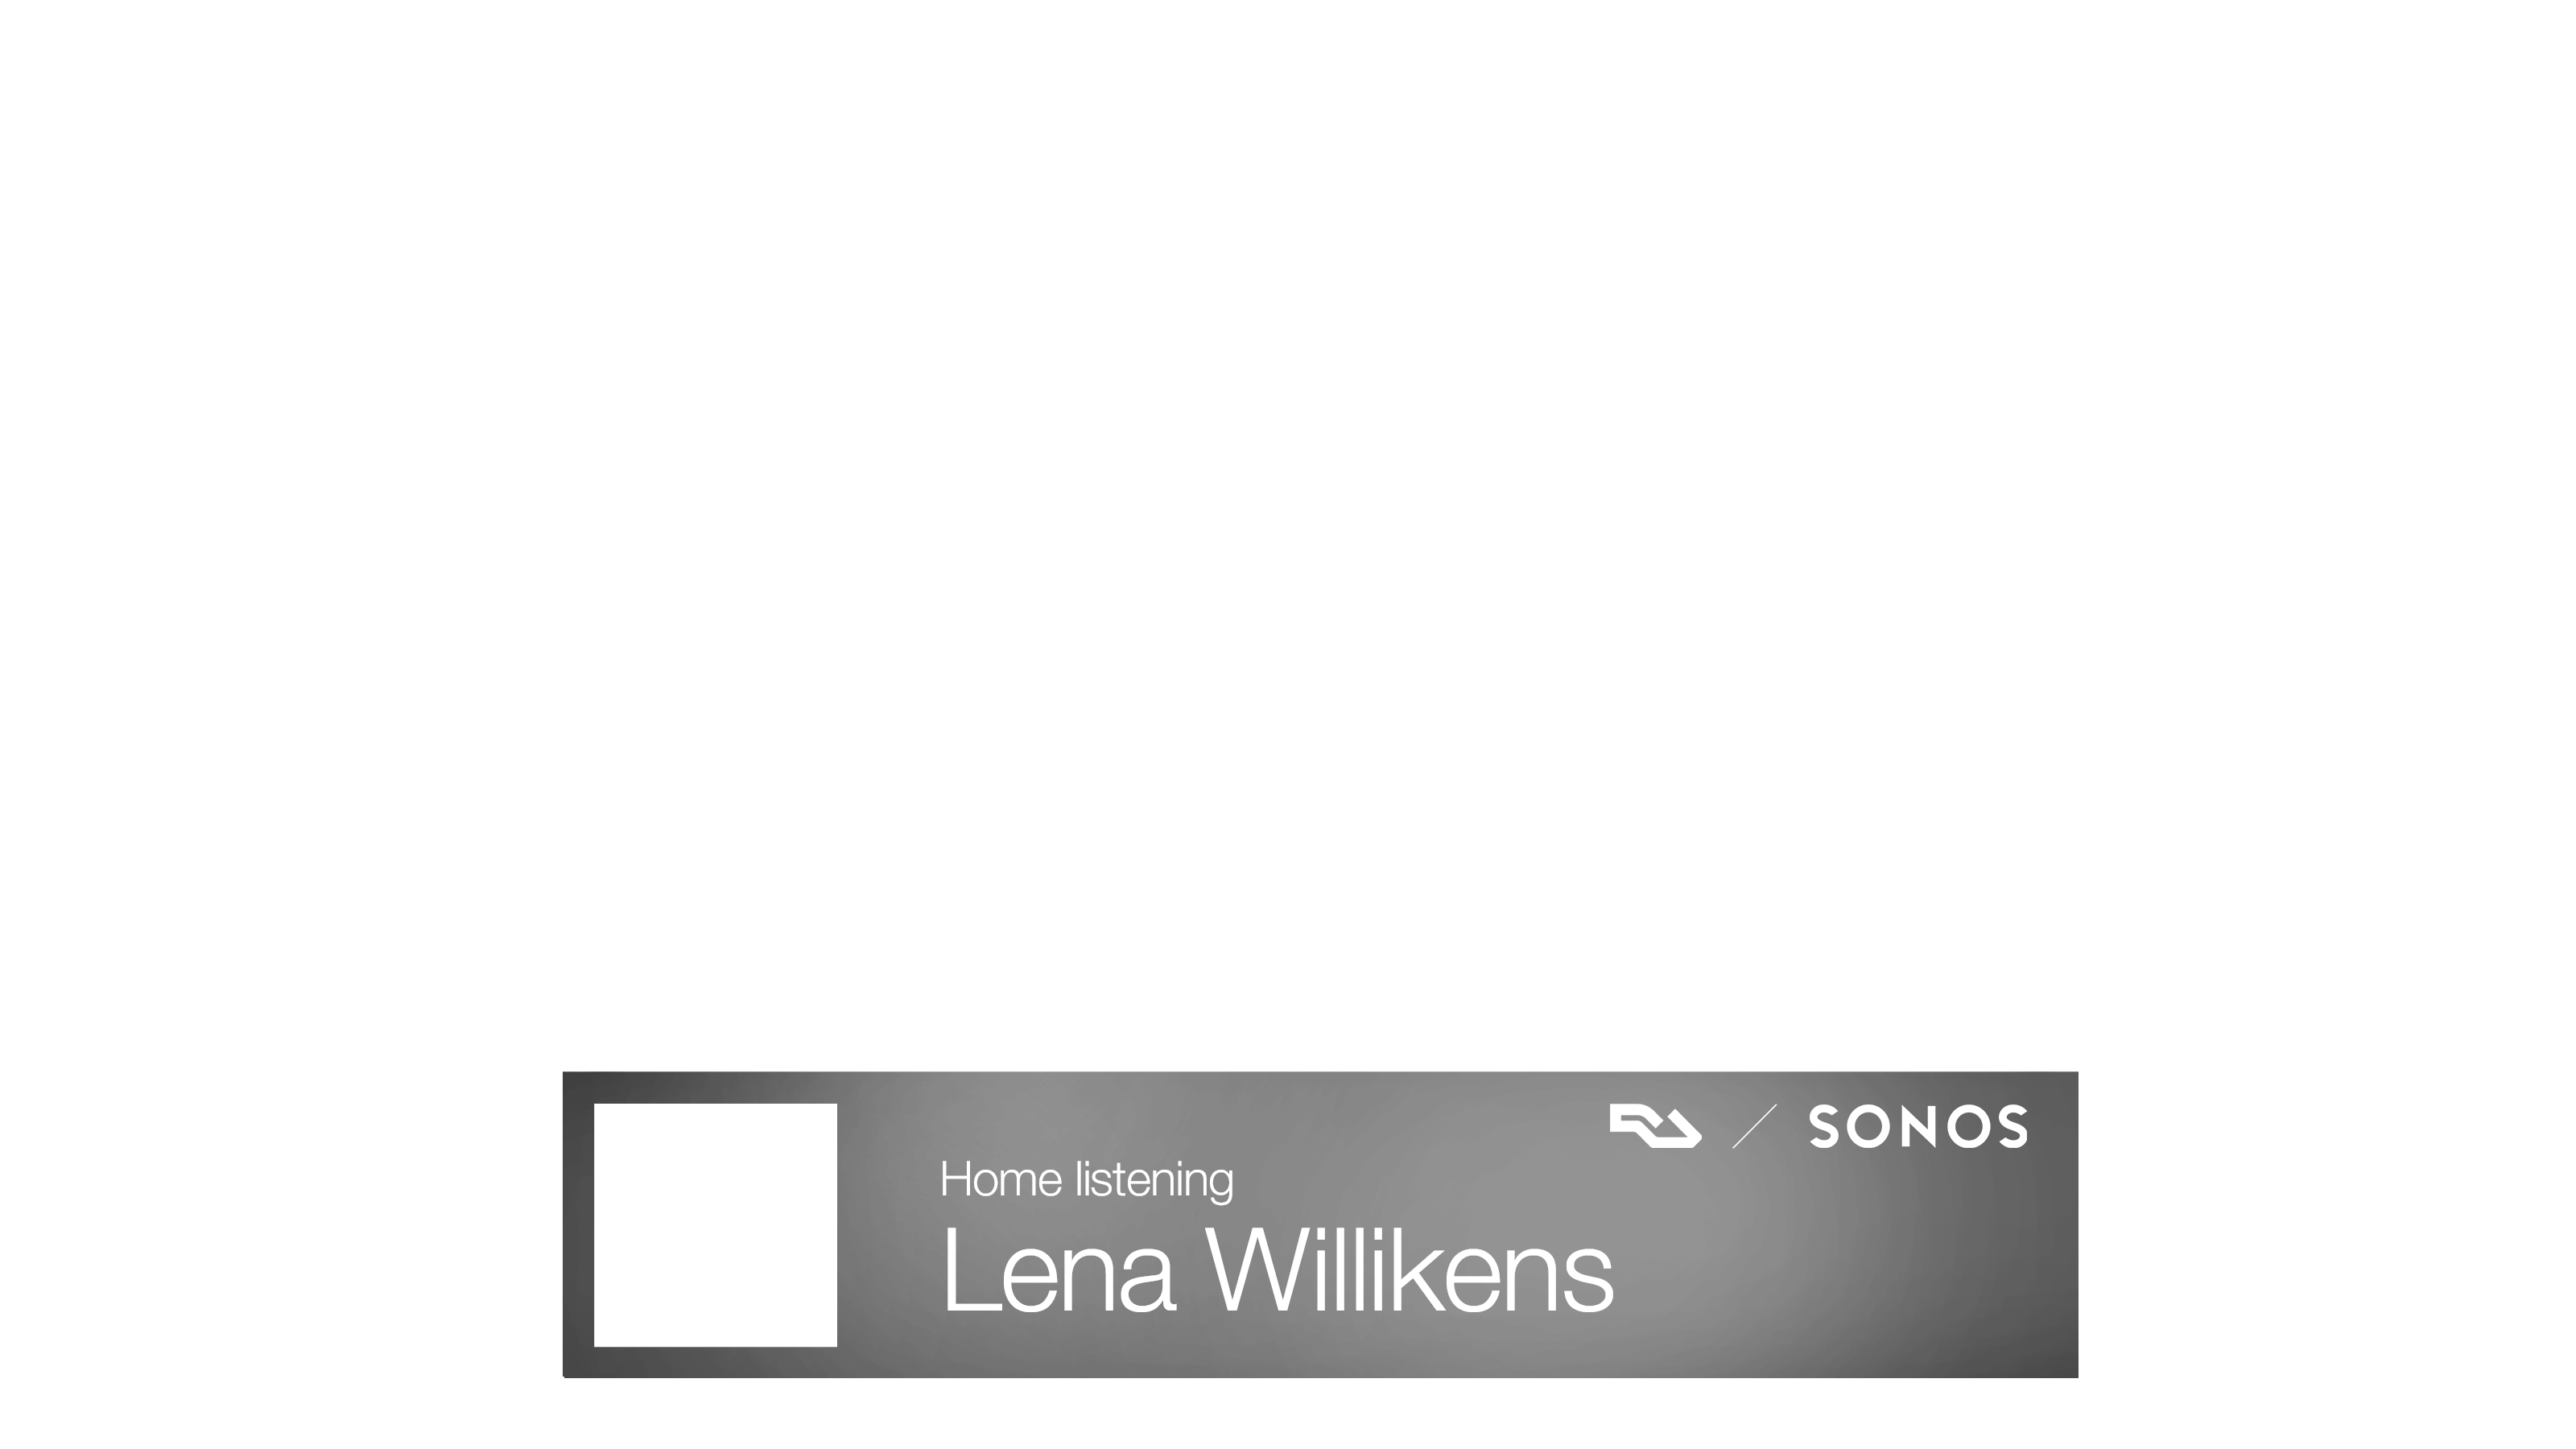 Home listening: Lena Willikens